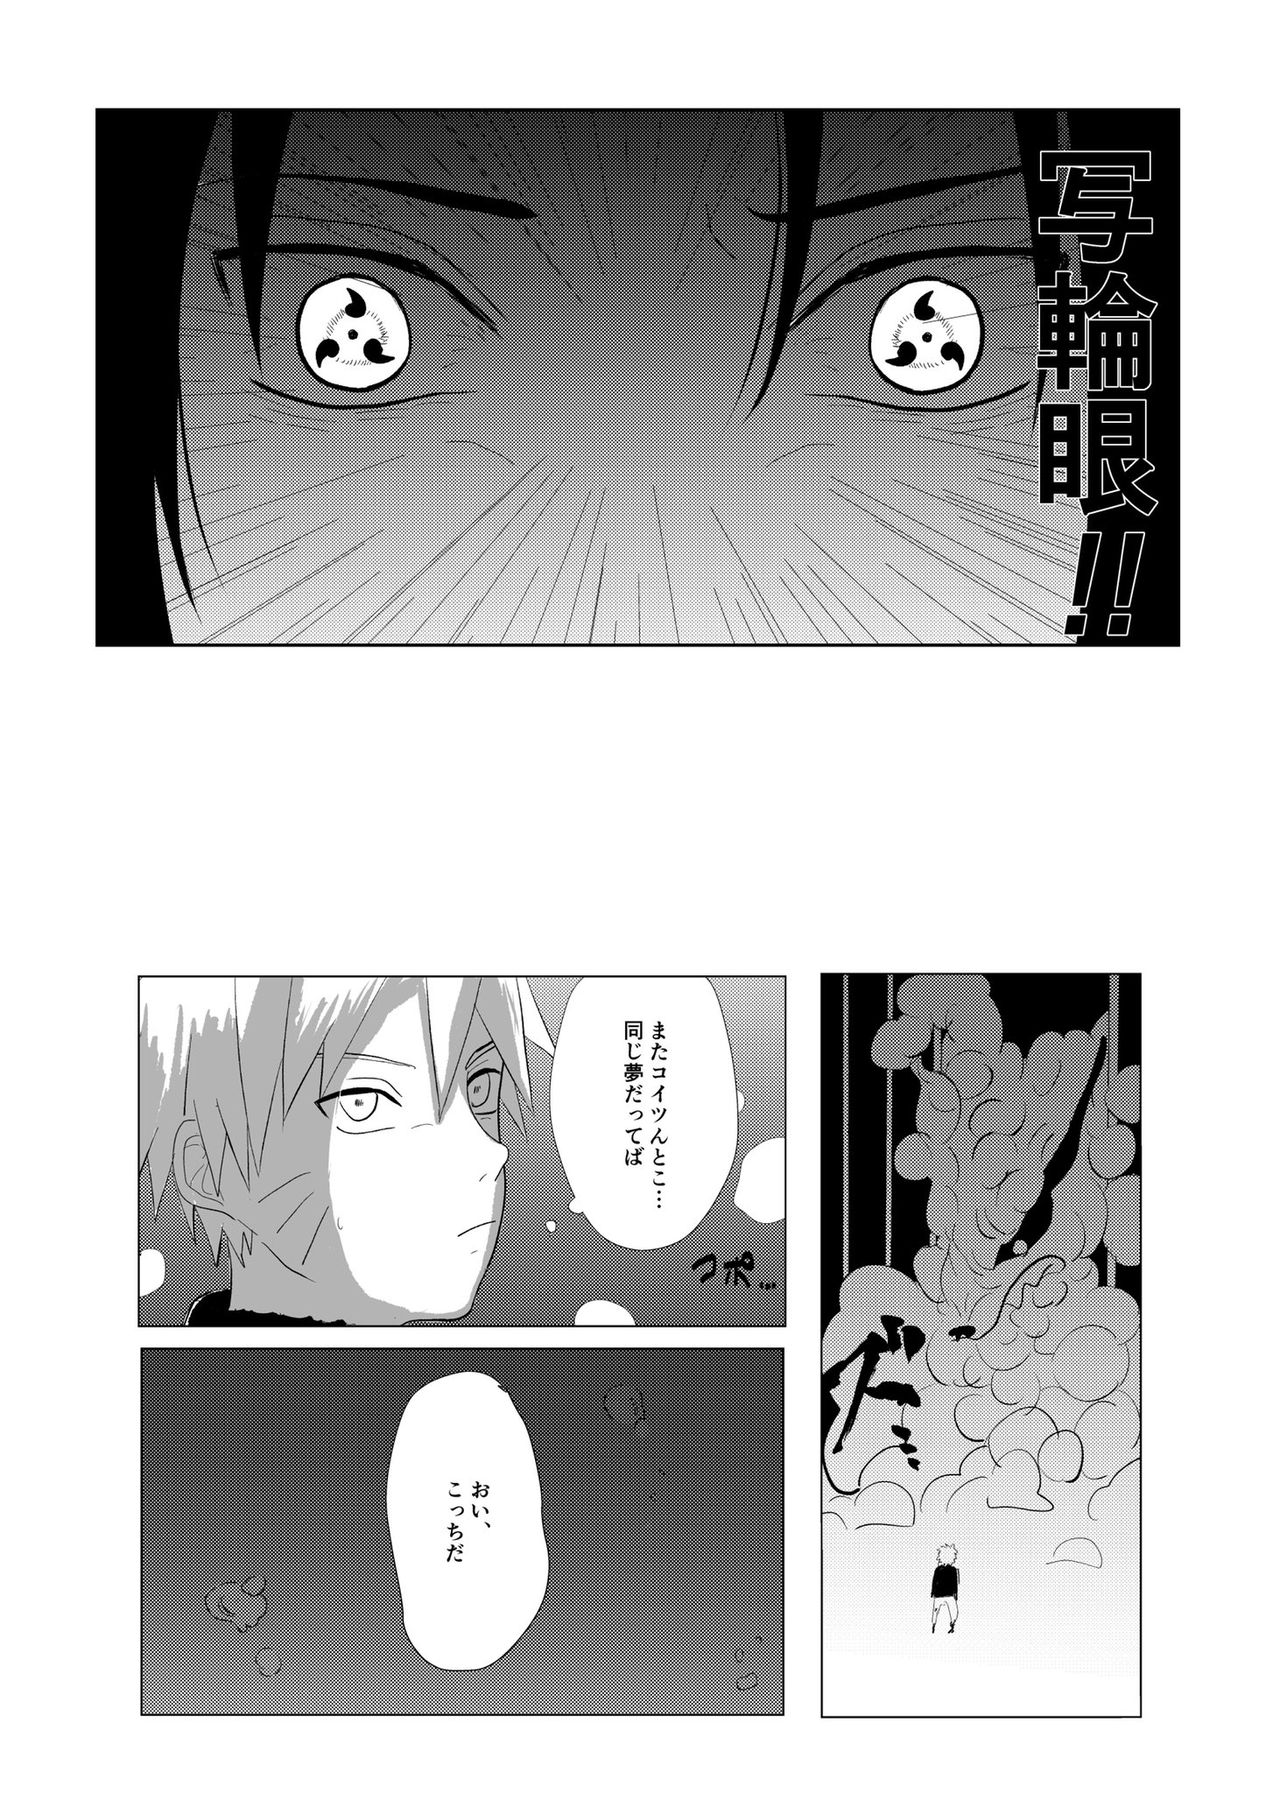 [Mayu] ??Manga (NARUTO) [Digital] page 4 full